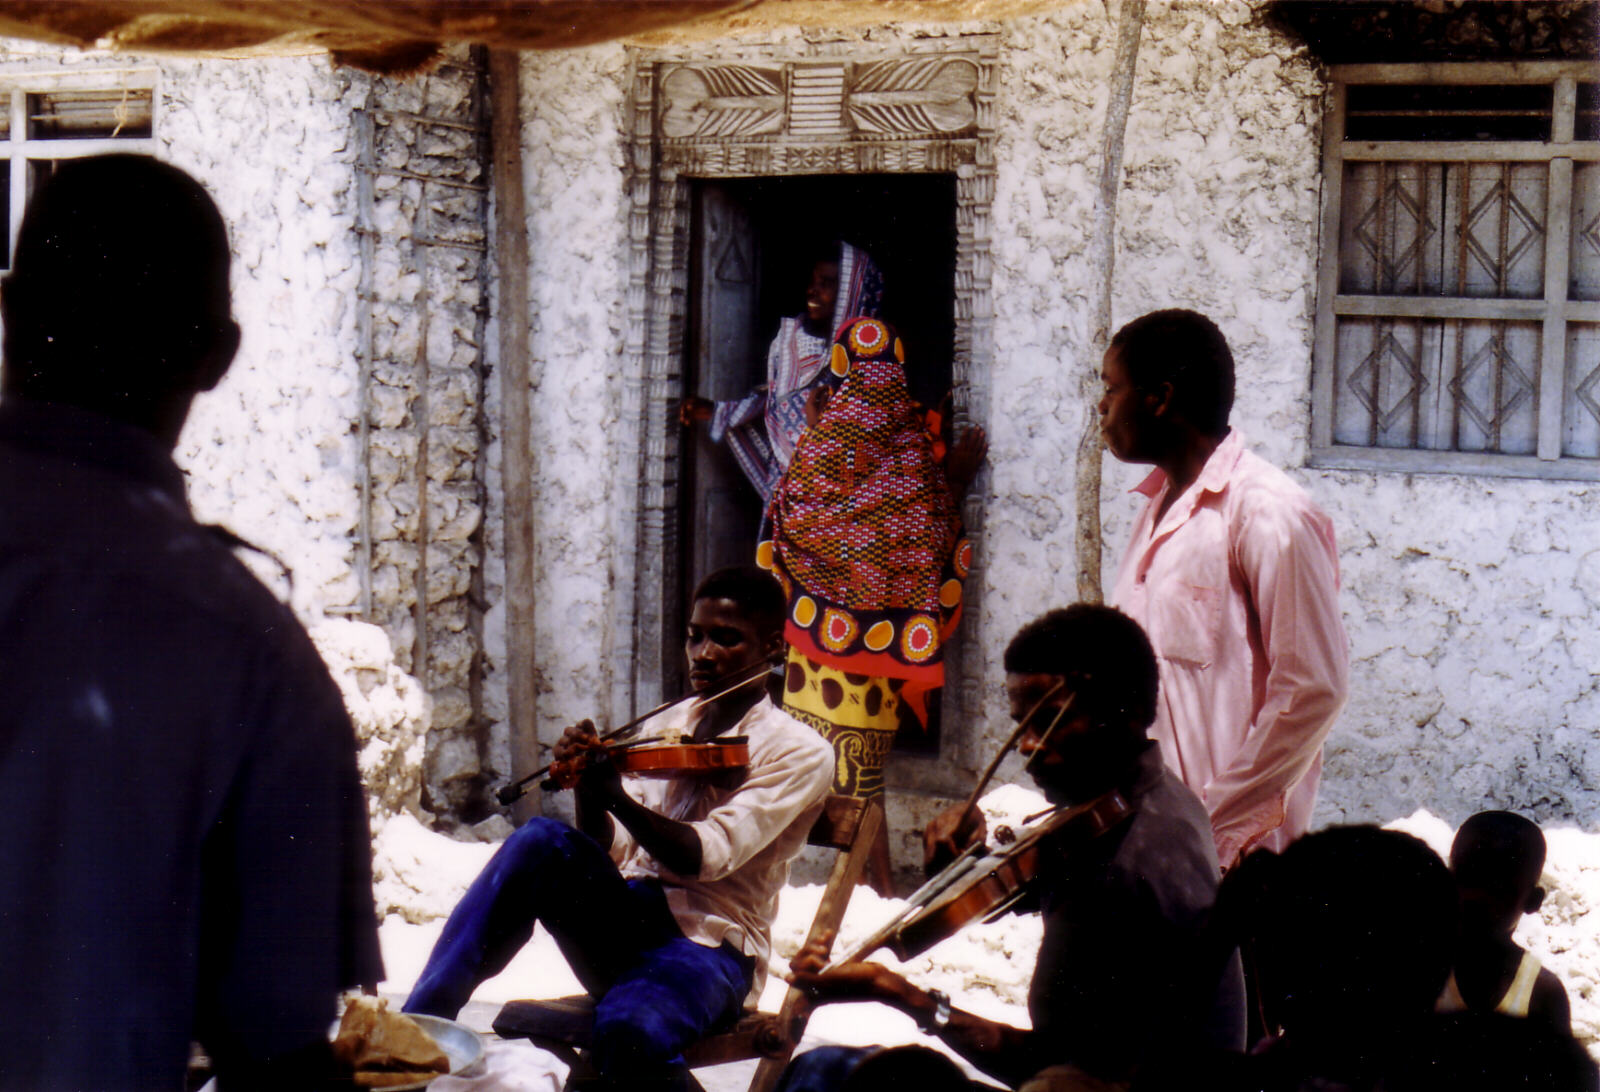 A wedding celebration at Bwejuu, Zanzibar